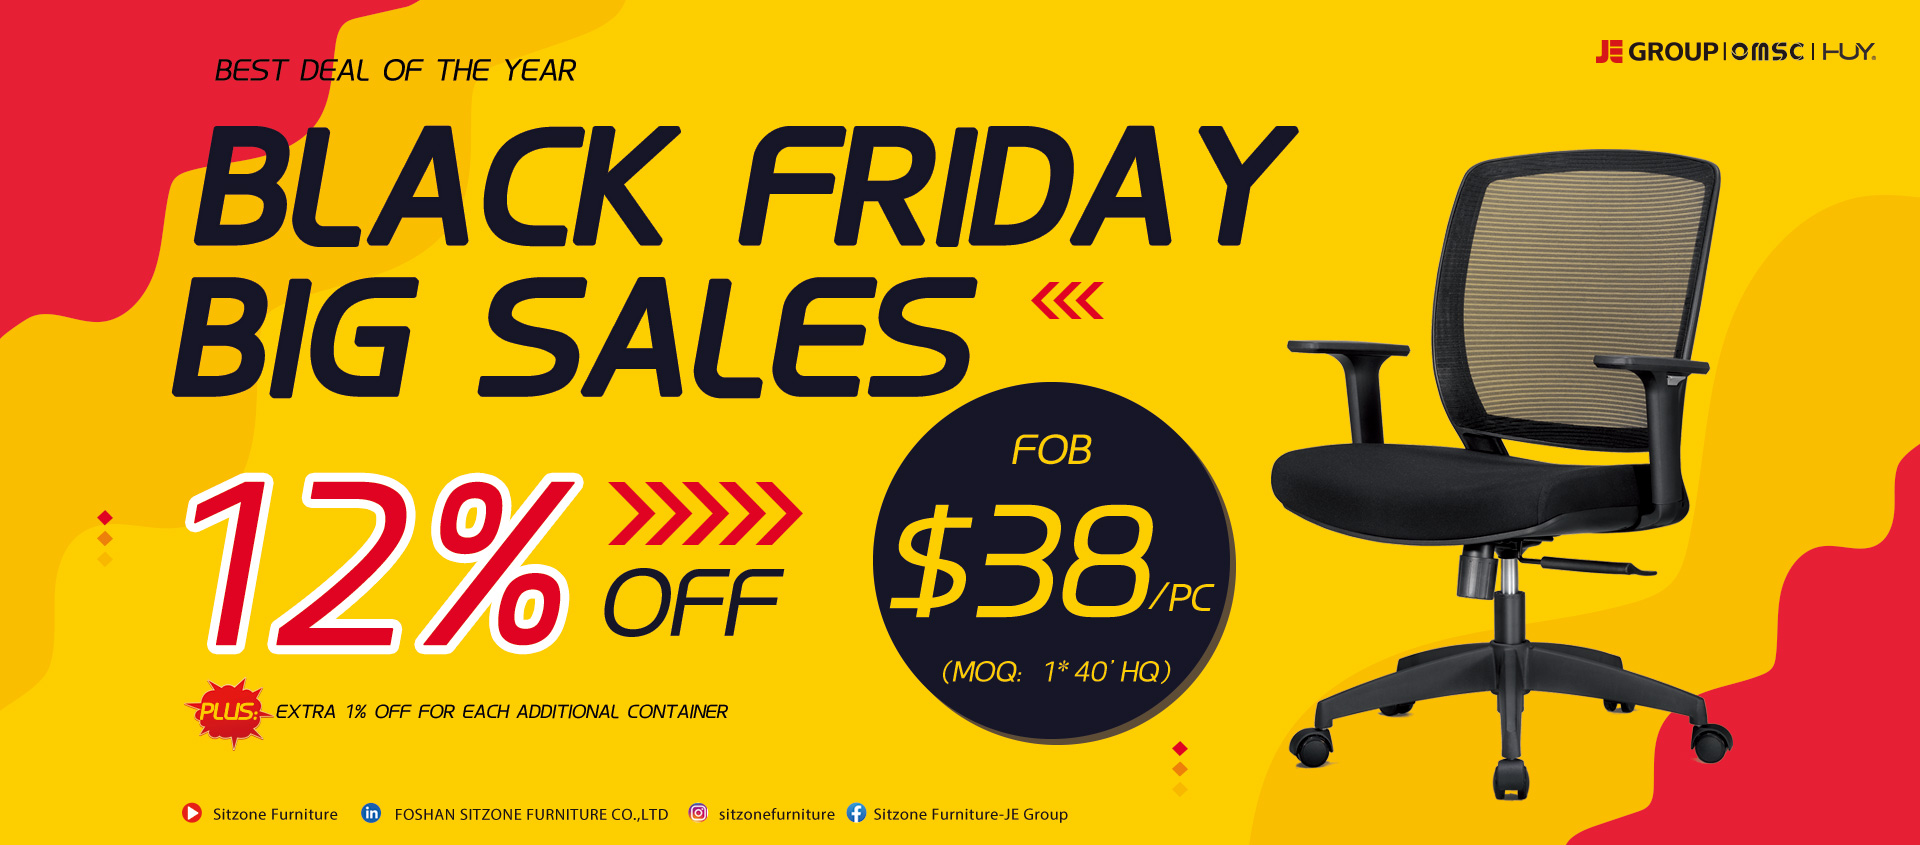 ХИ-528 мрежаста столица црни петак велика распродаја